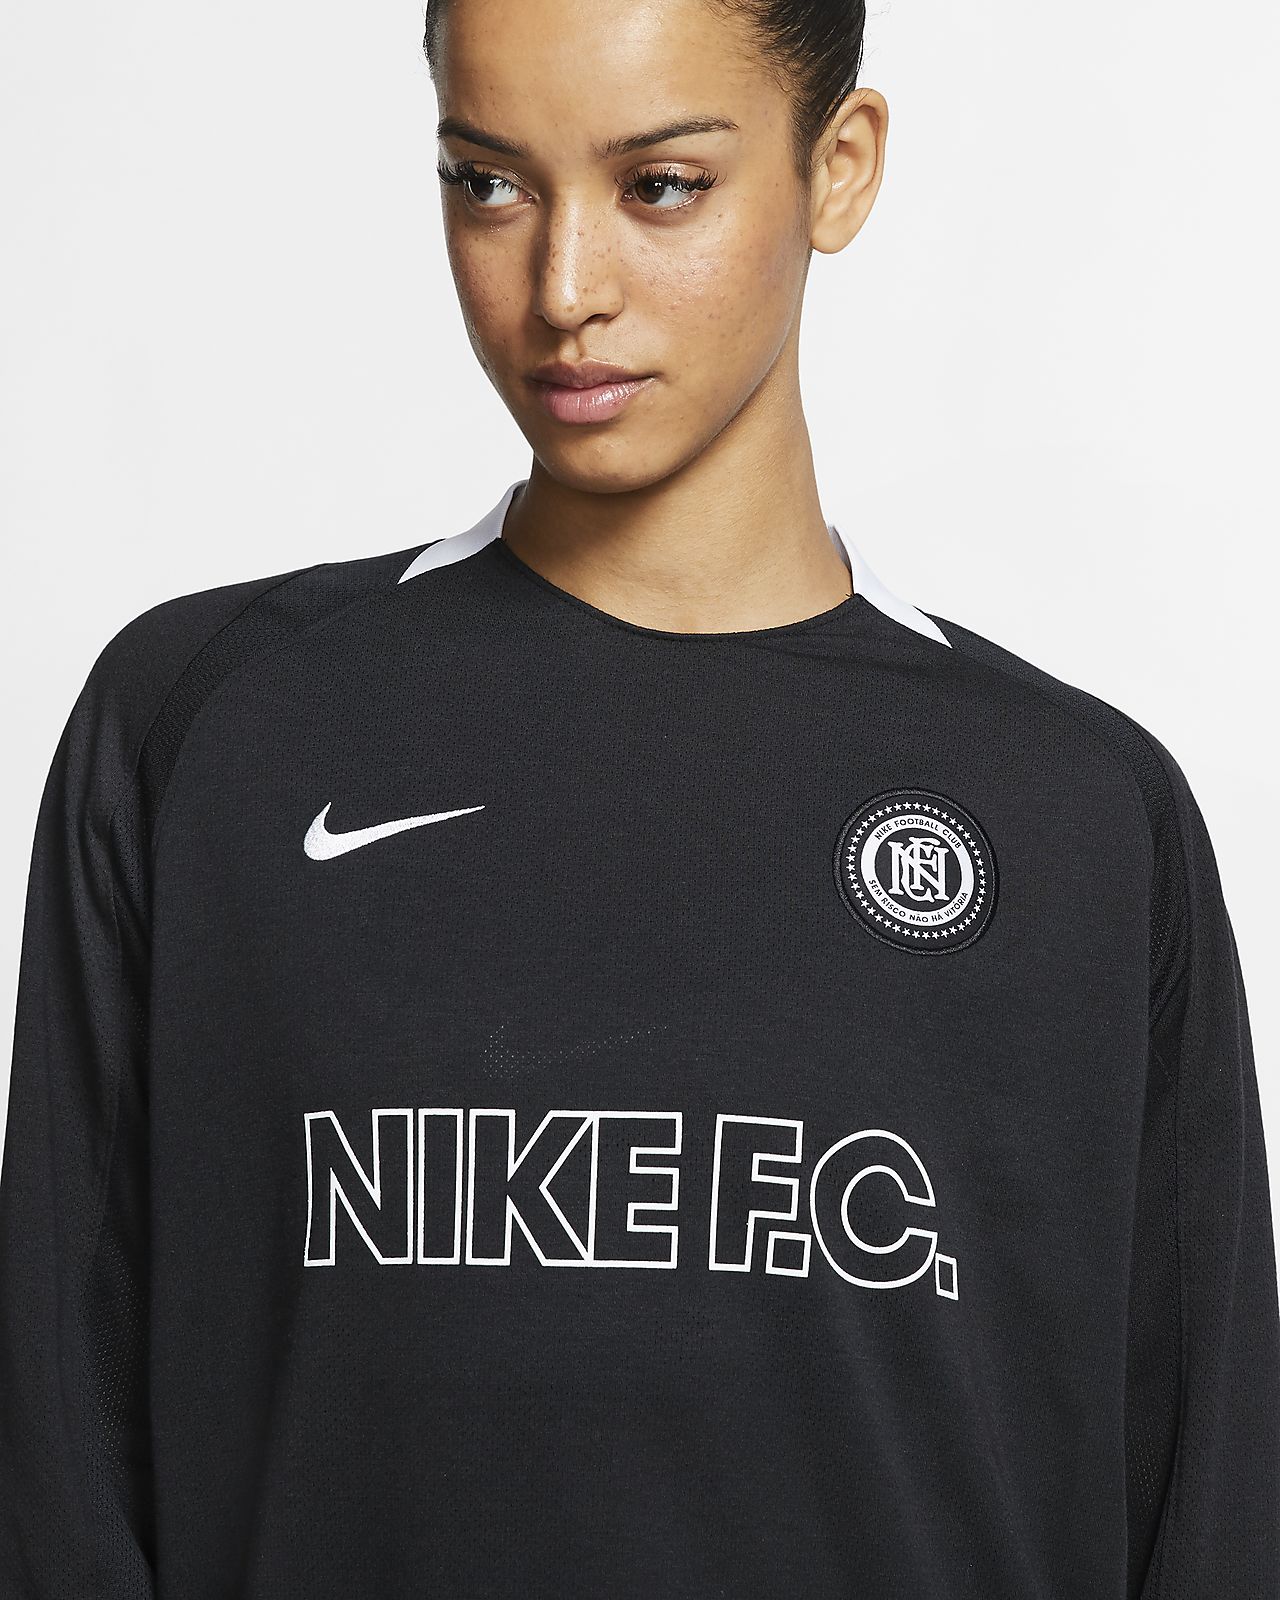 Long-Sleeve Football Shirt. Nike 